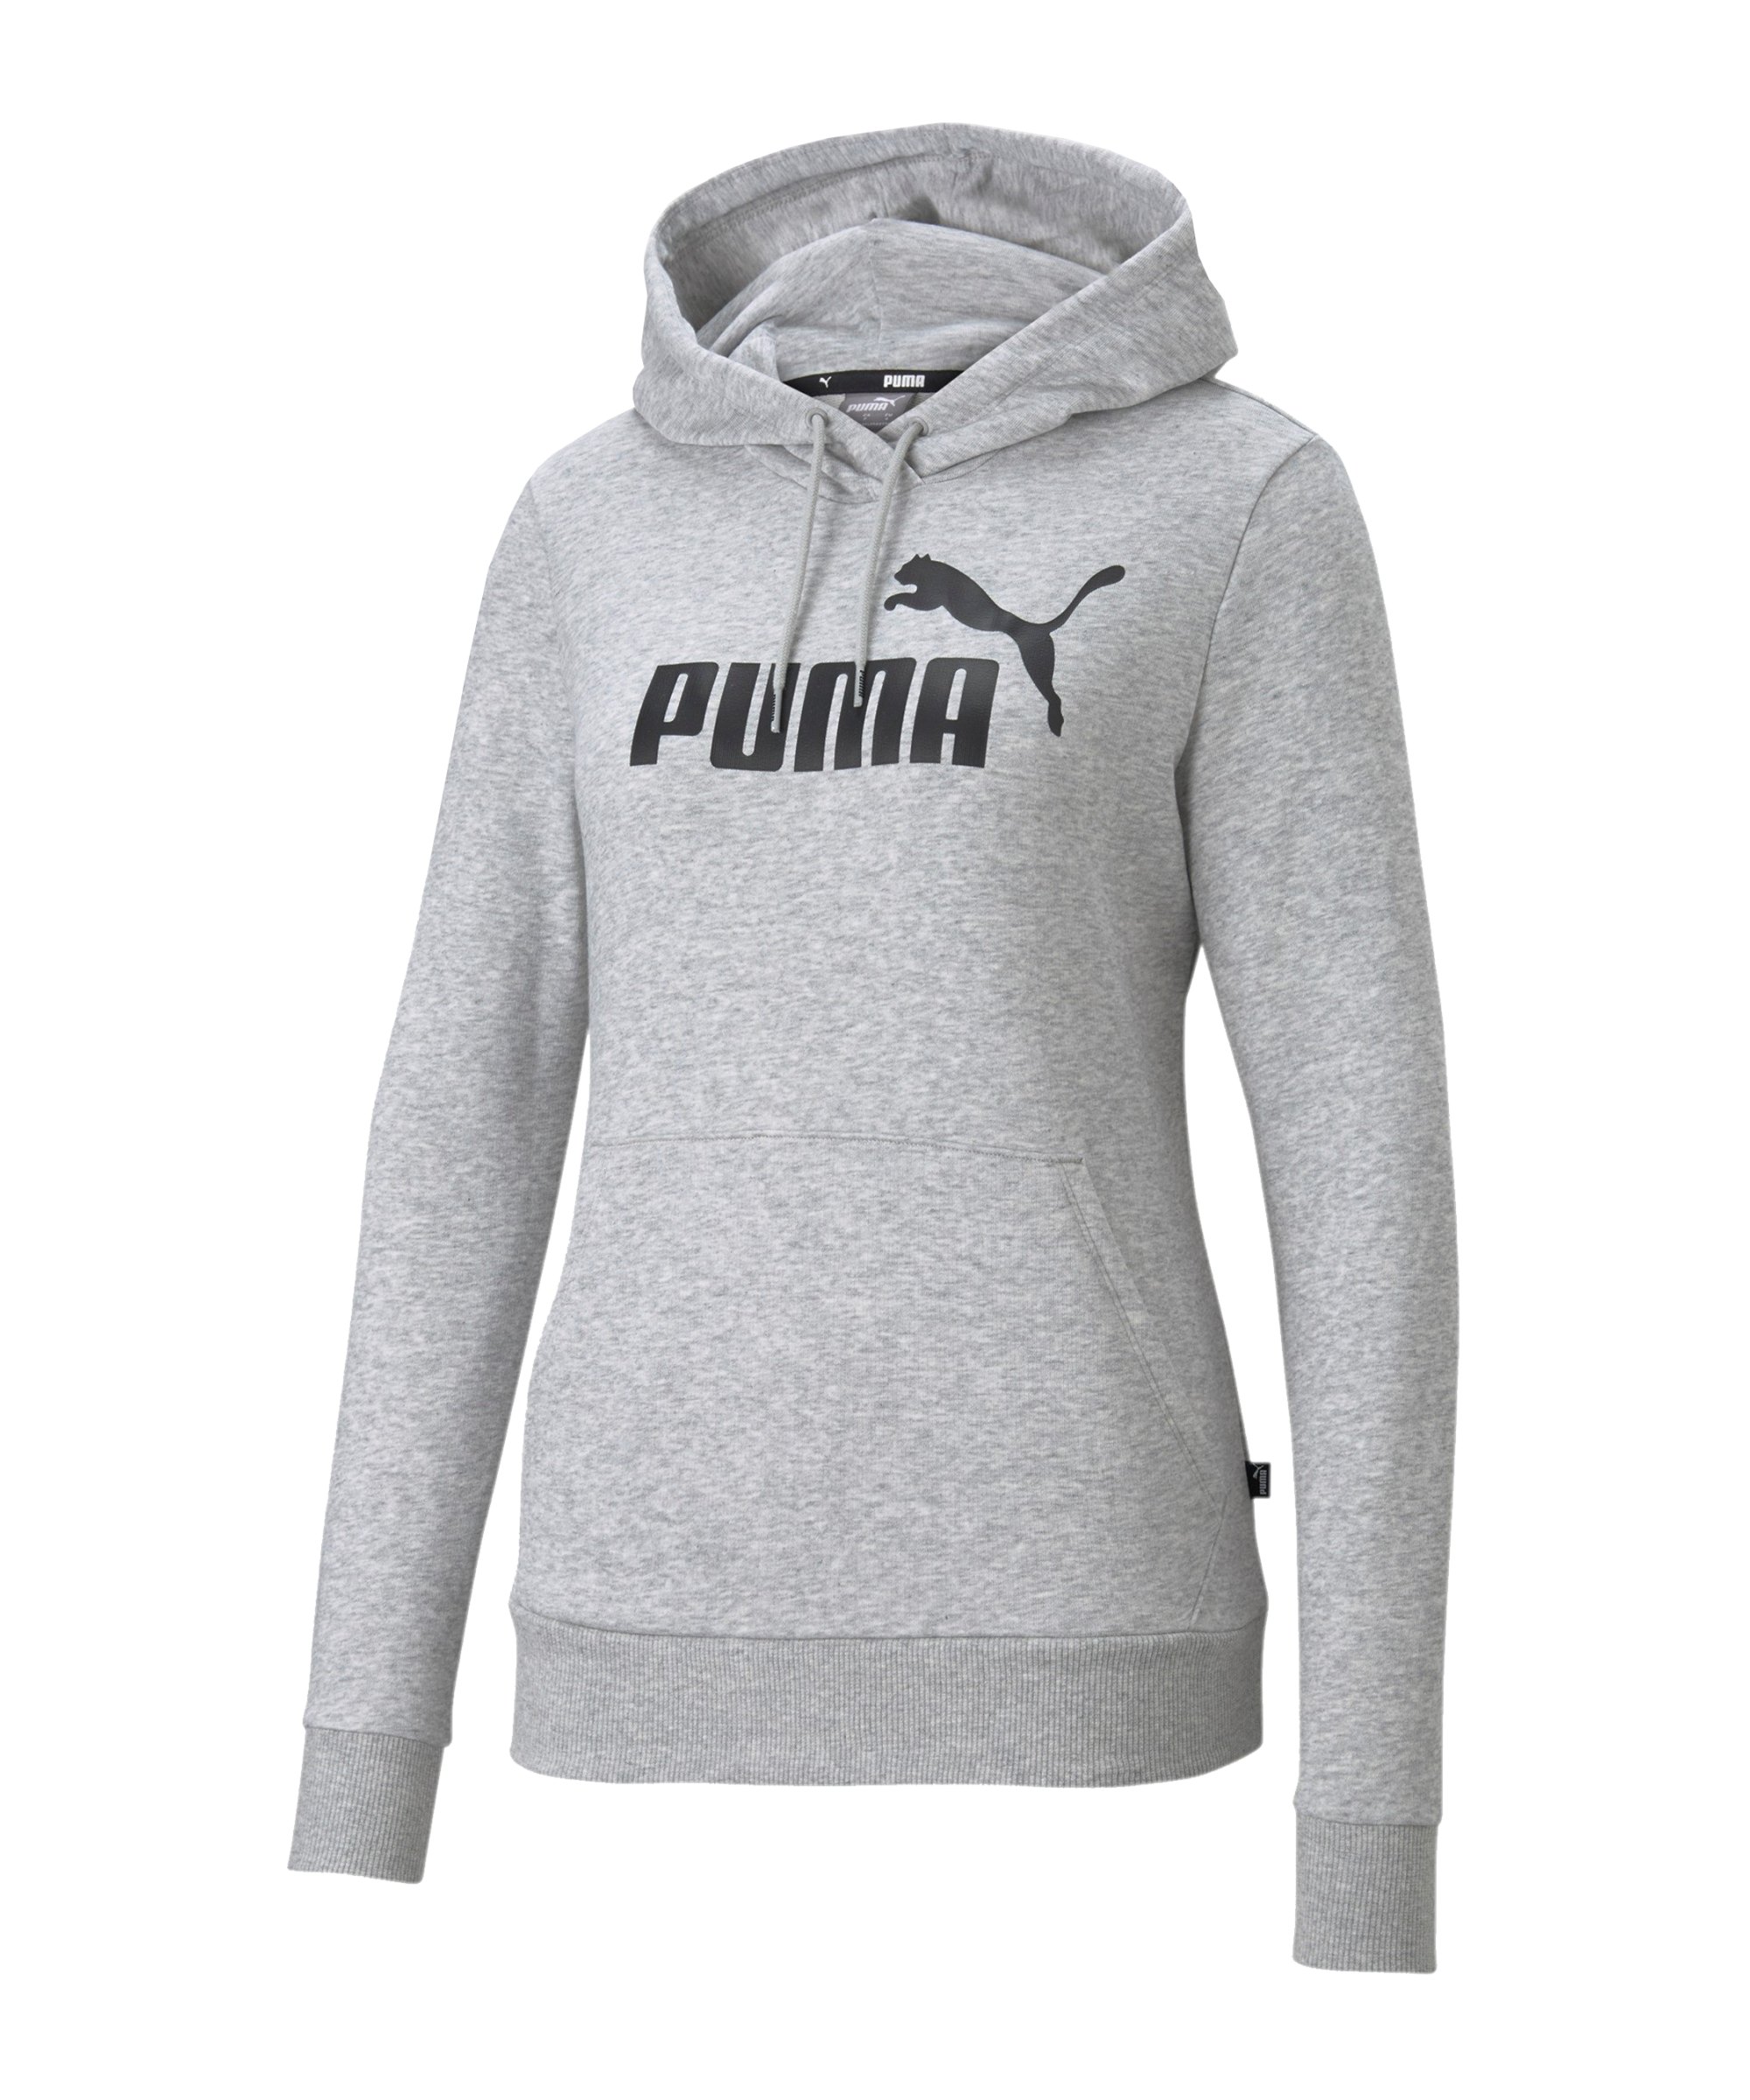 PUMA Essential Logo Hoody Damen Grau F04 - grau